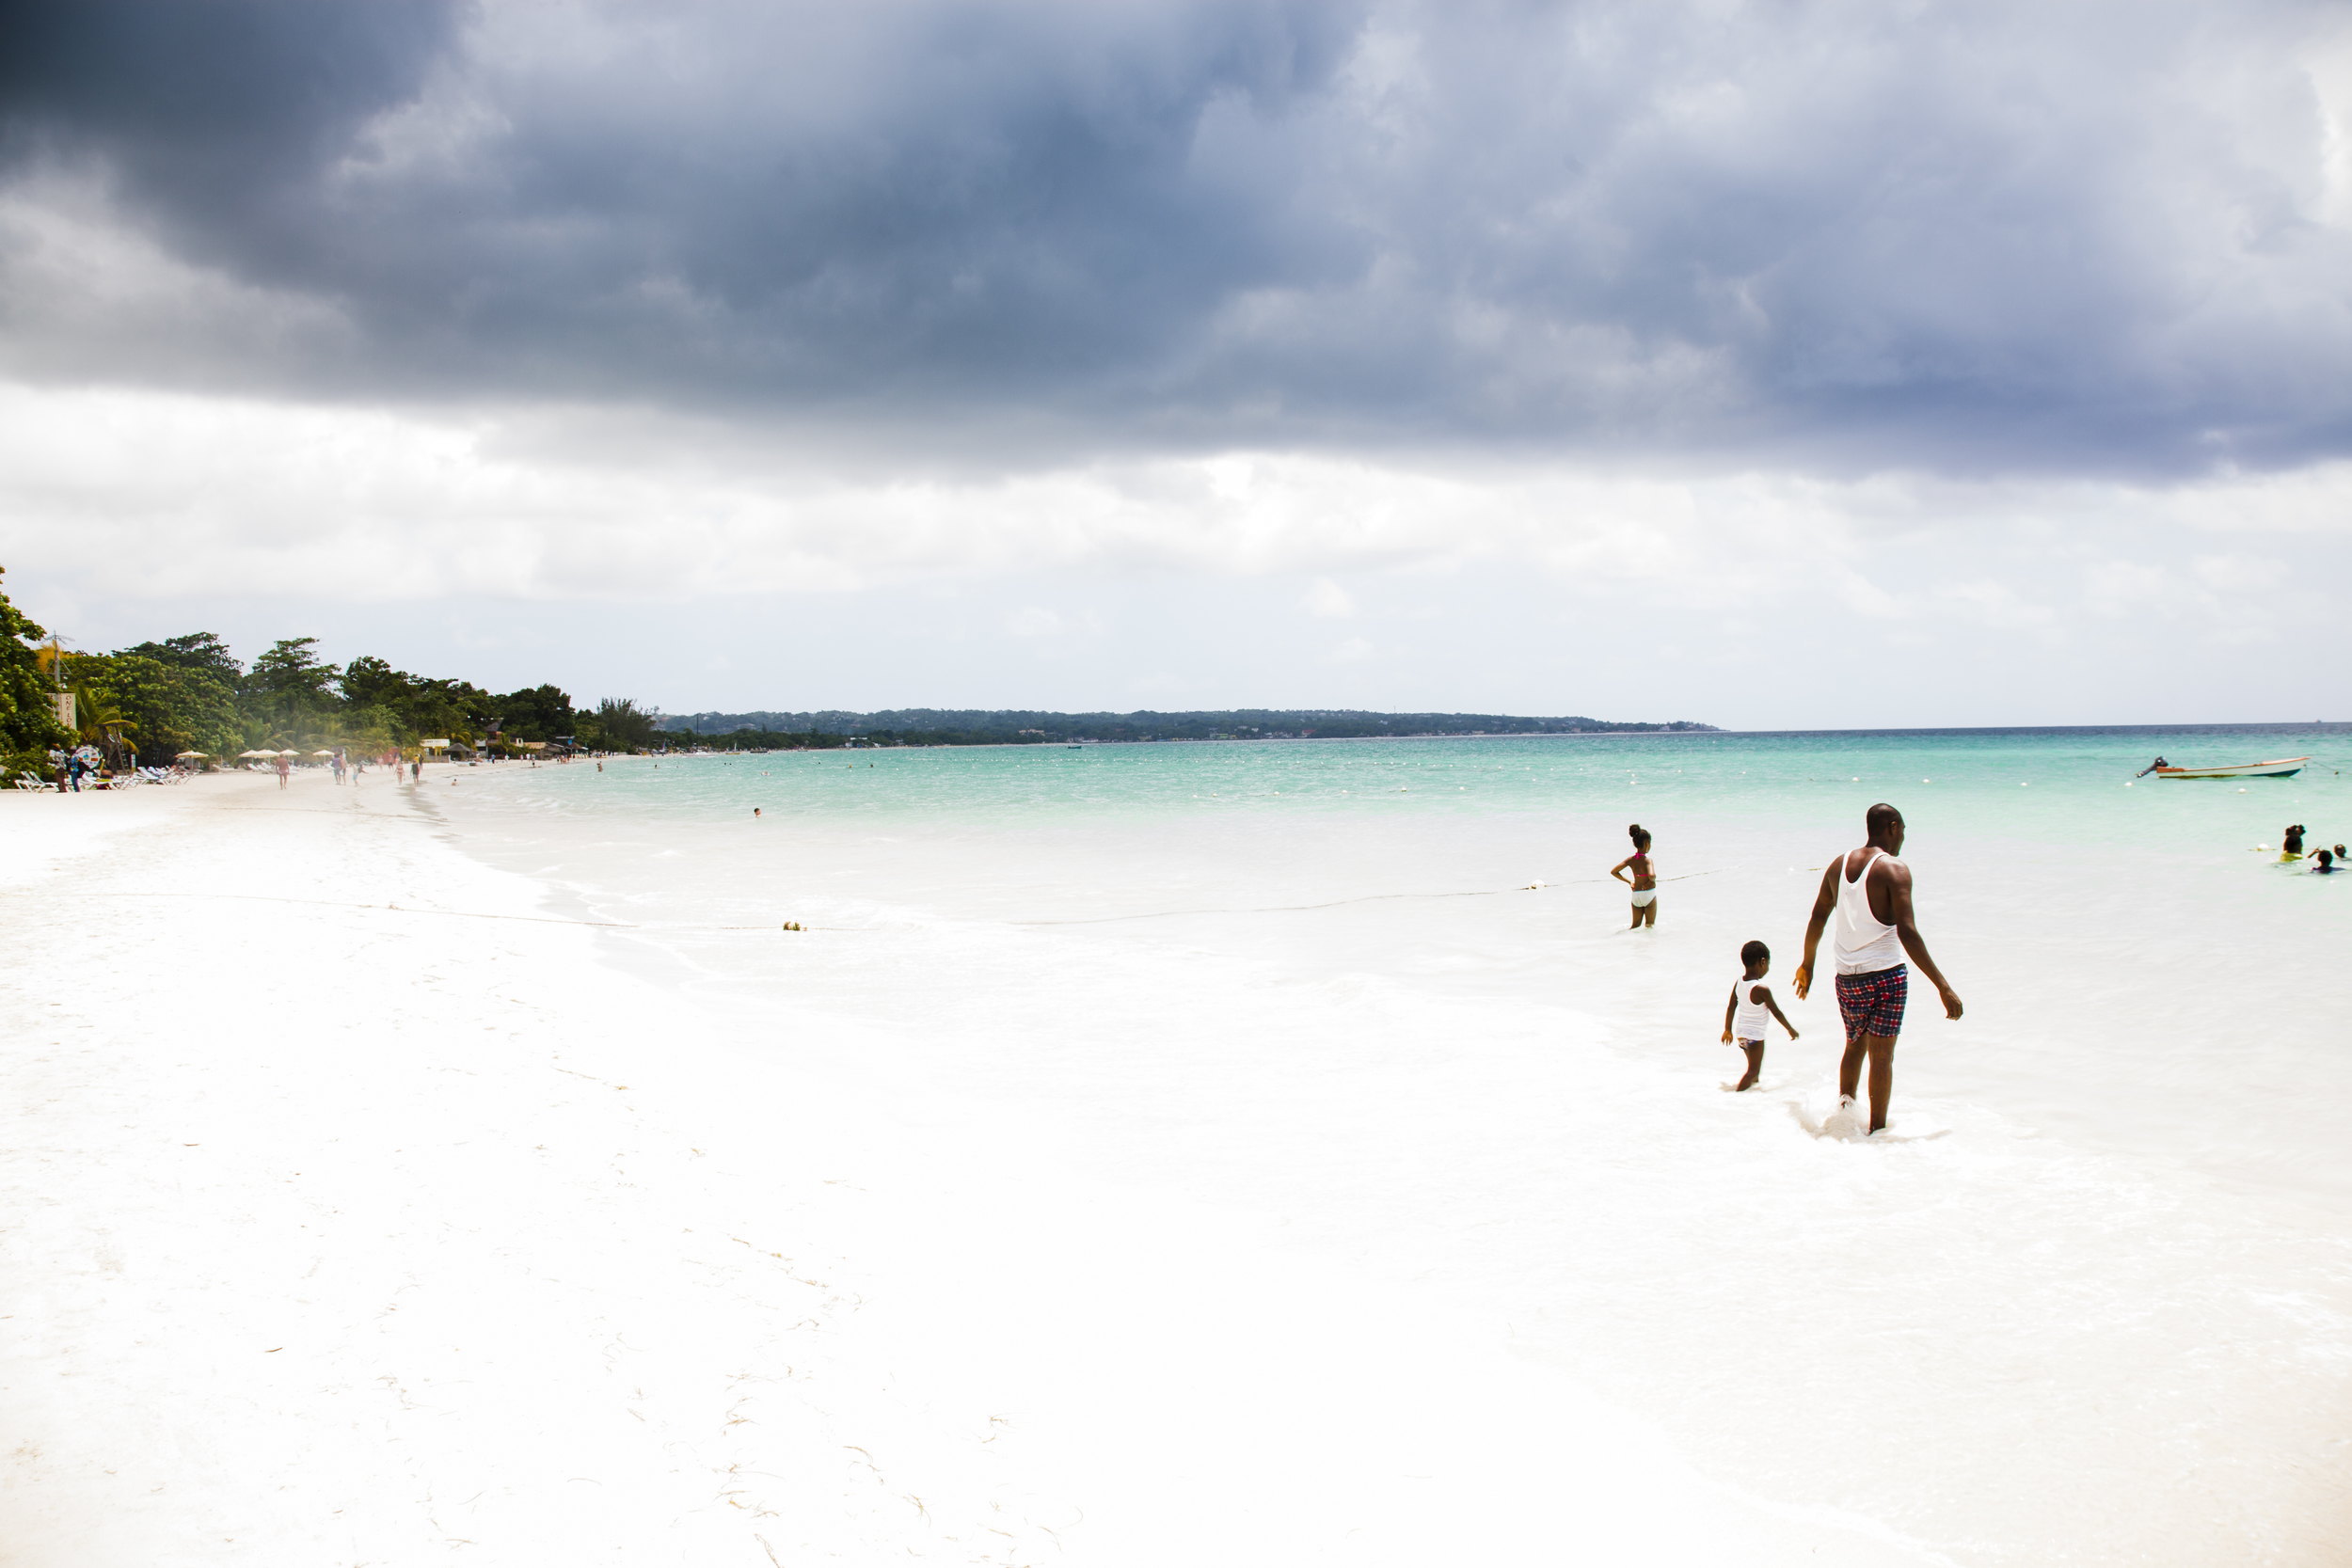  Negril, Jamaica 2014 ©Laura Elo 